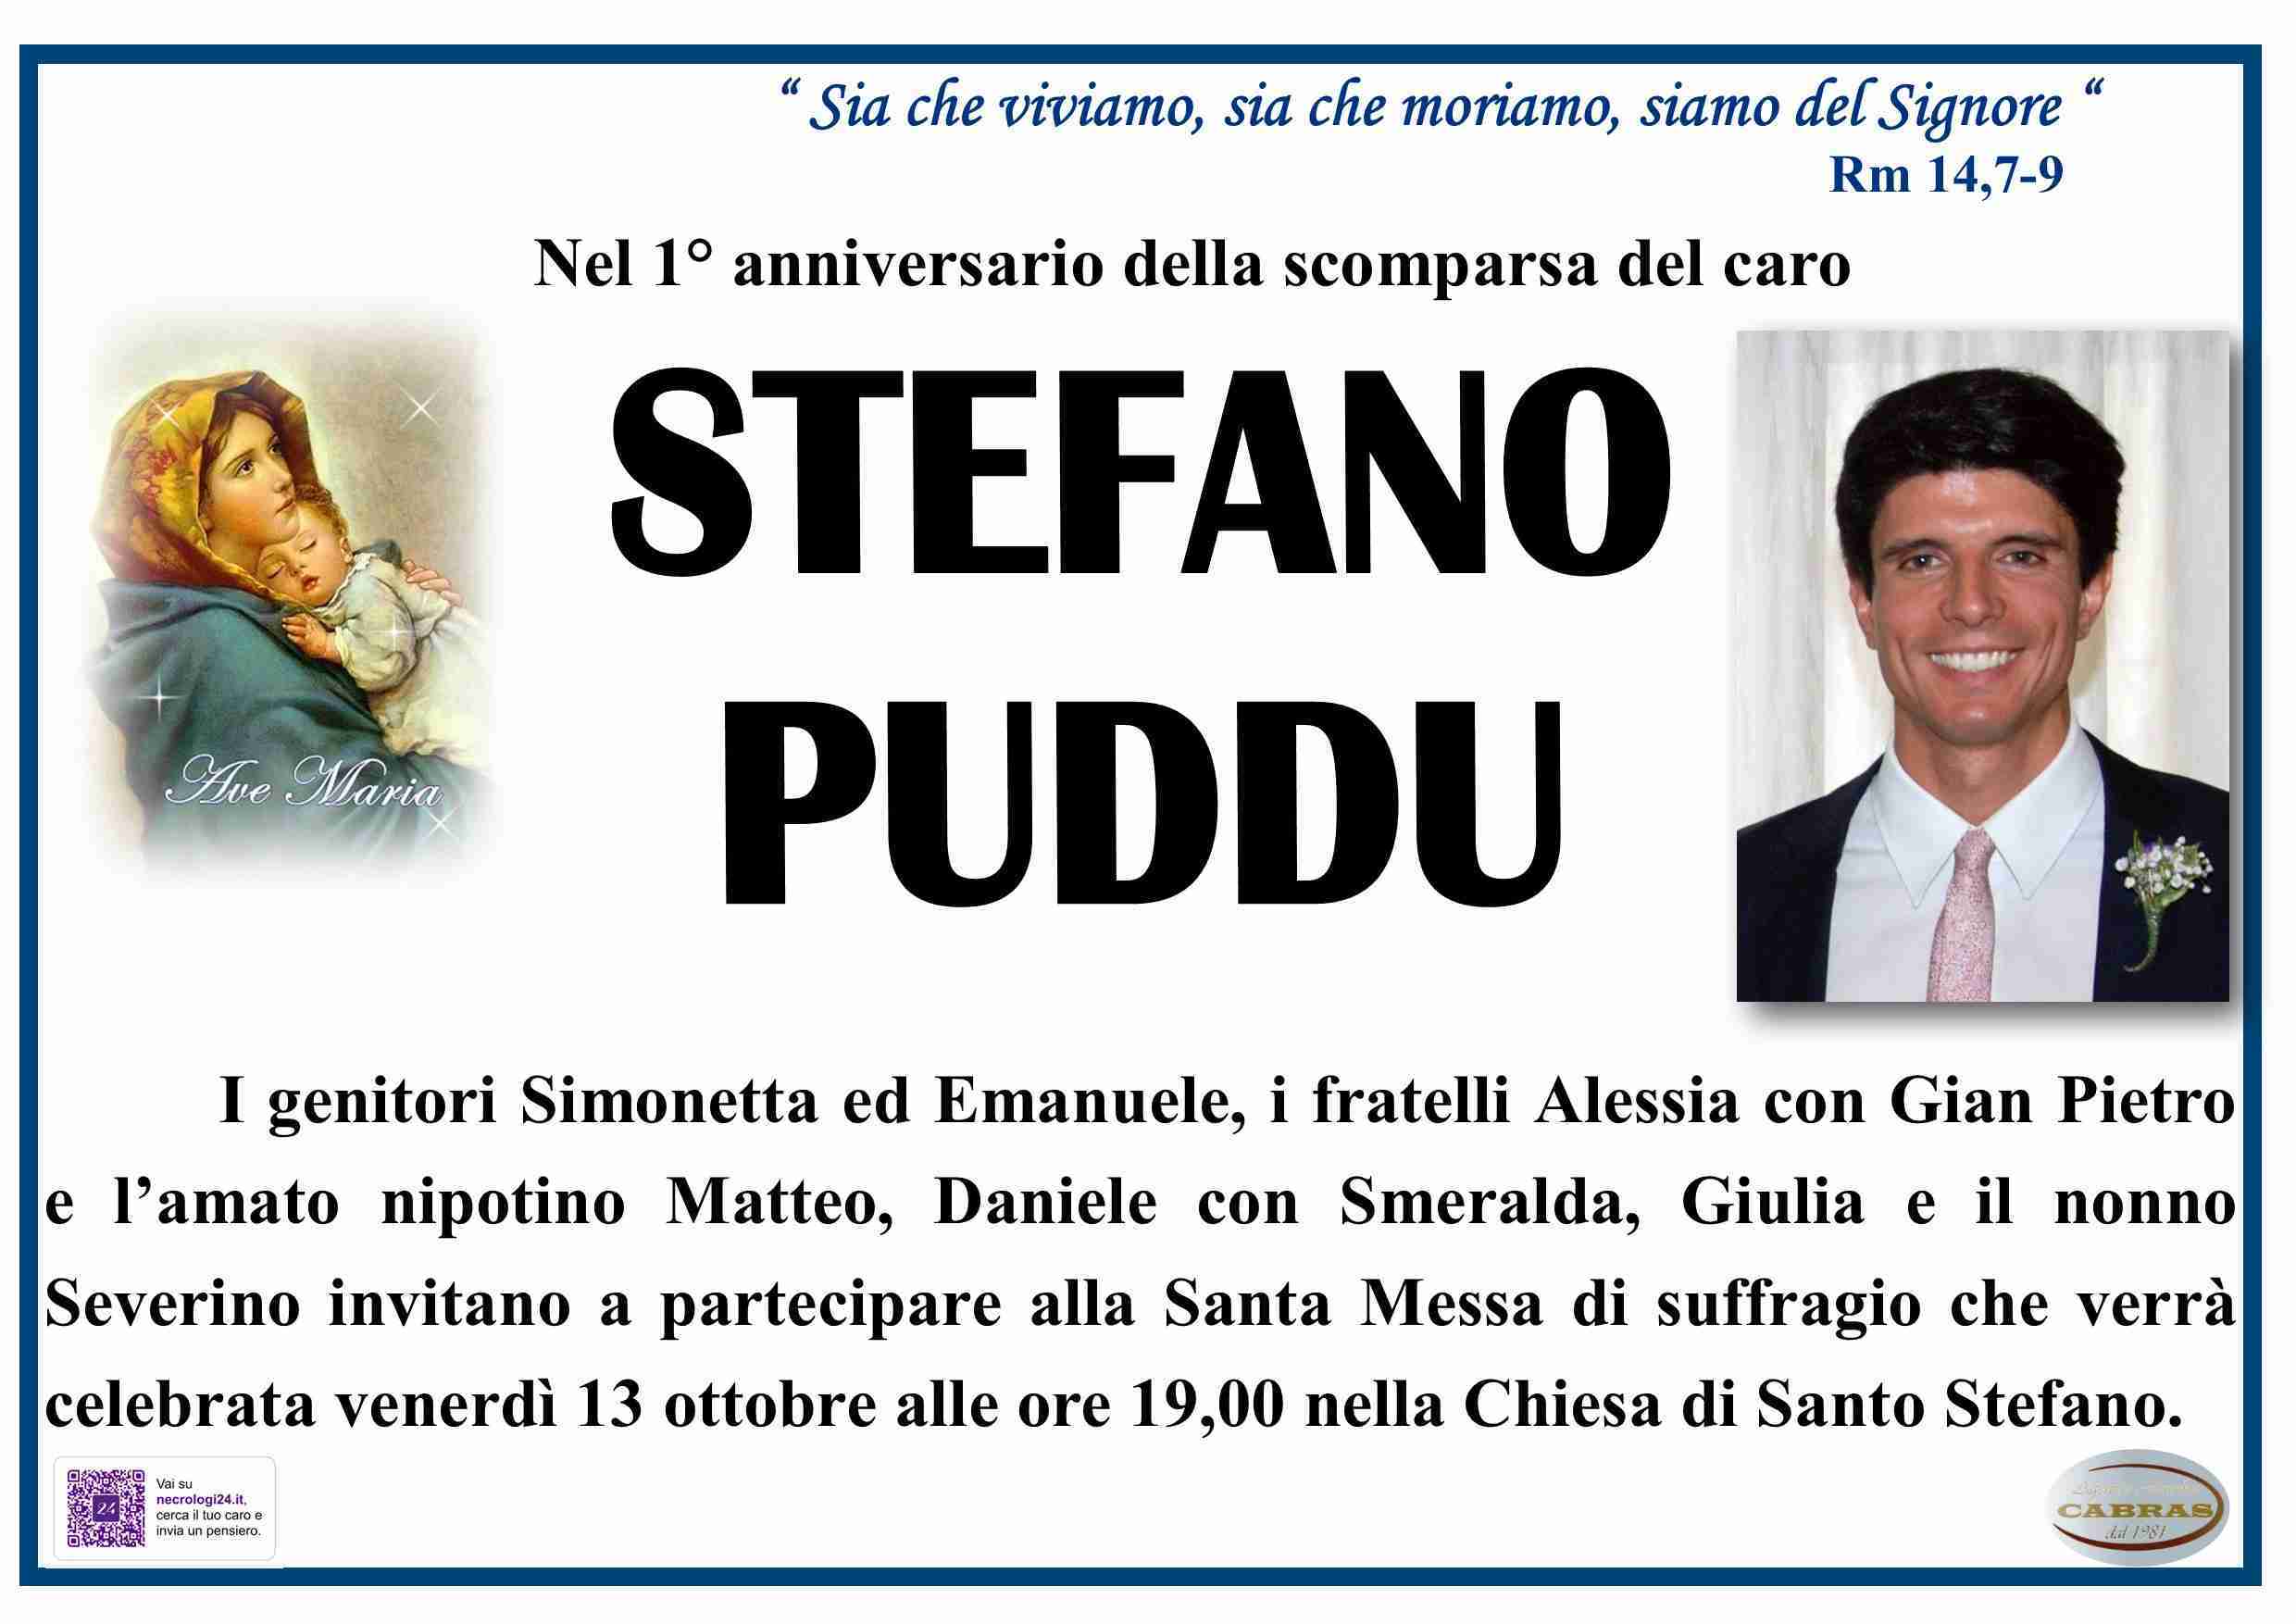 Stefano Puddu